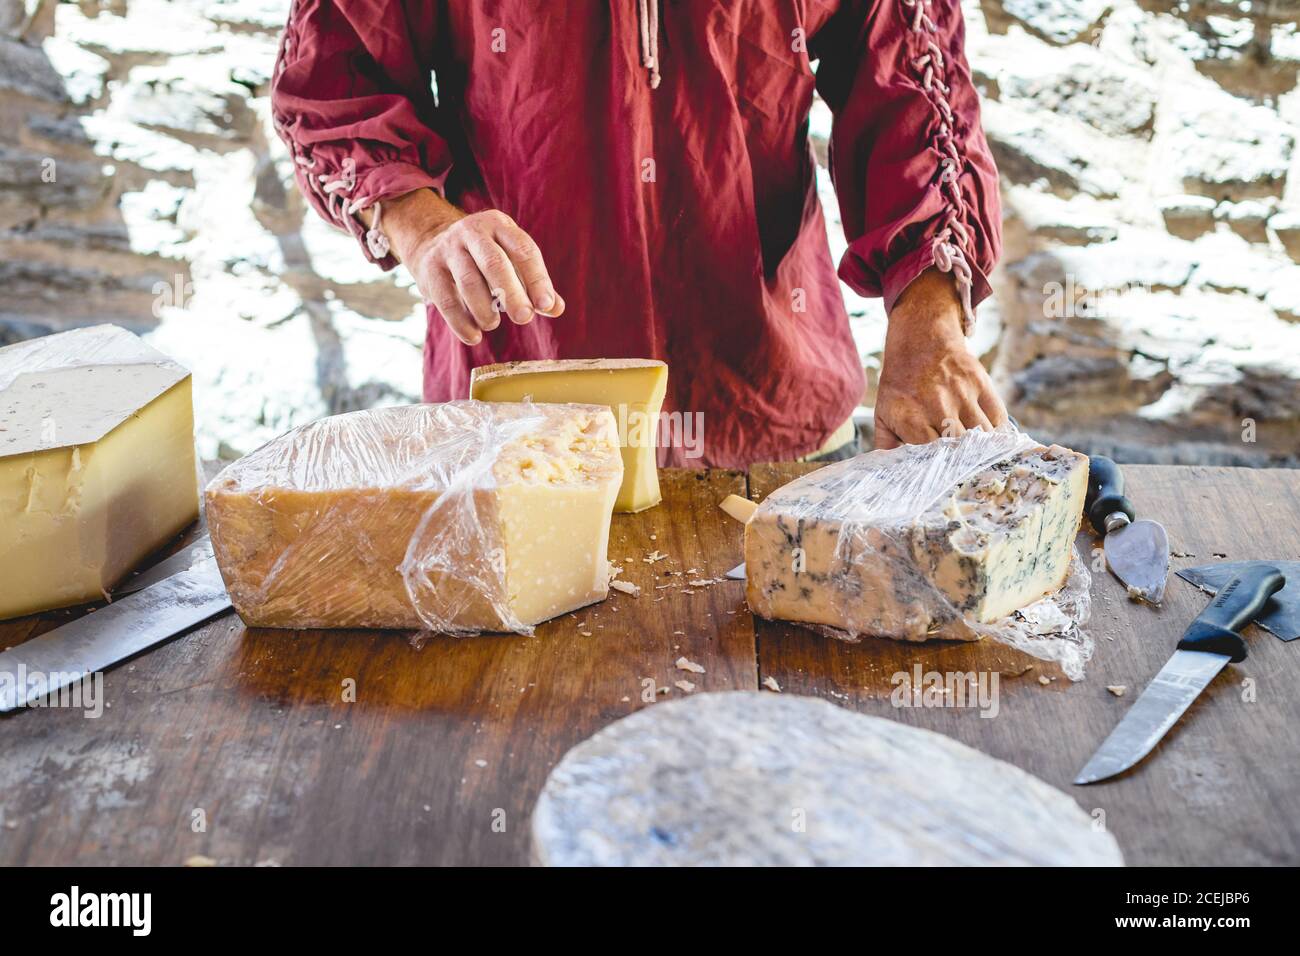 Crop Hand des Verkäufers geben dem Kunden ein Stück Käse auf Messer zum Verkosten Stockfoto